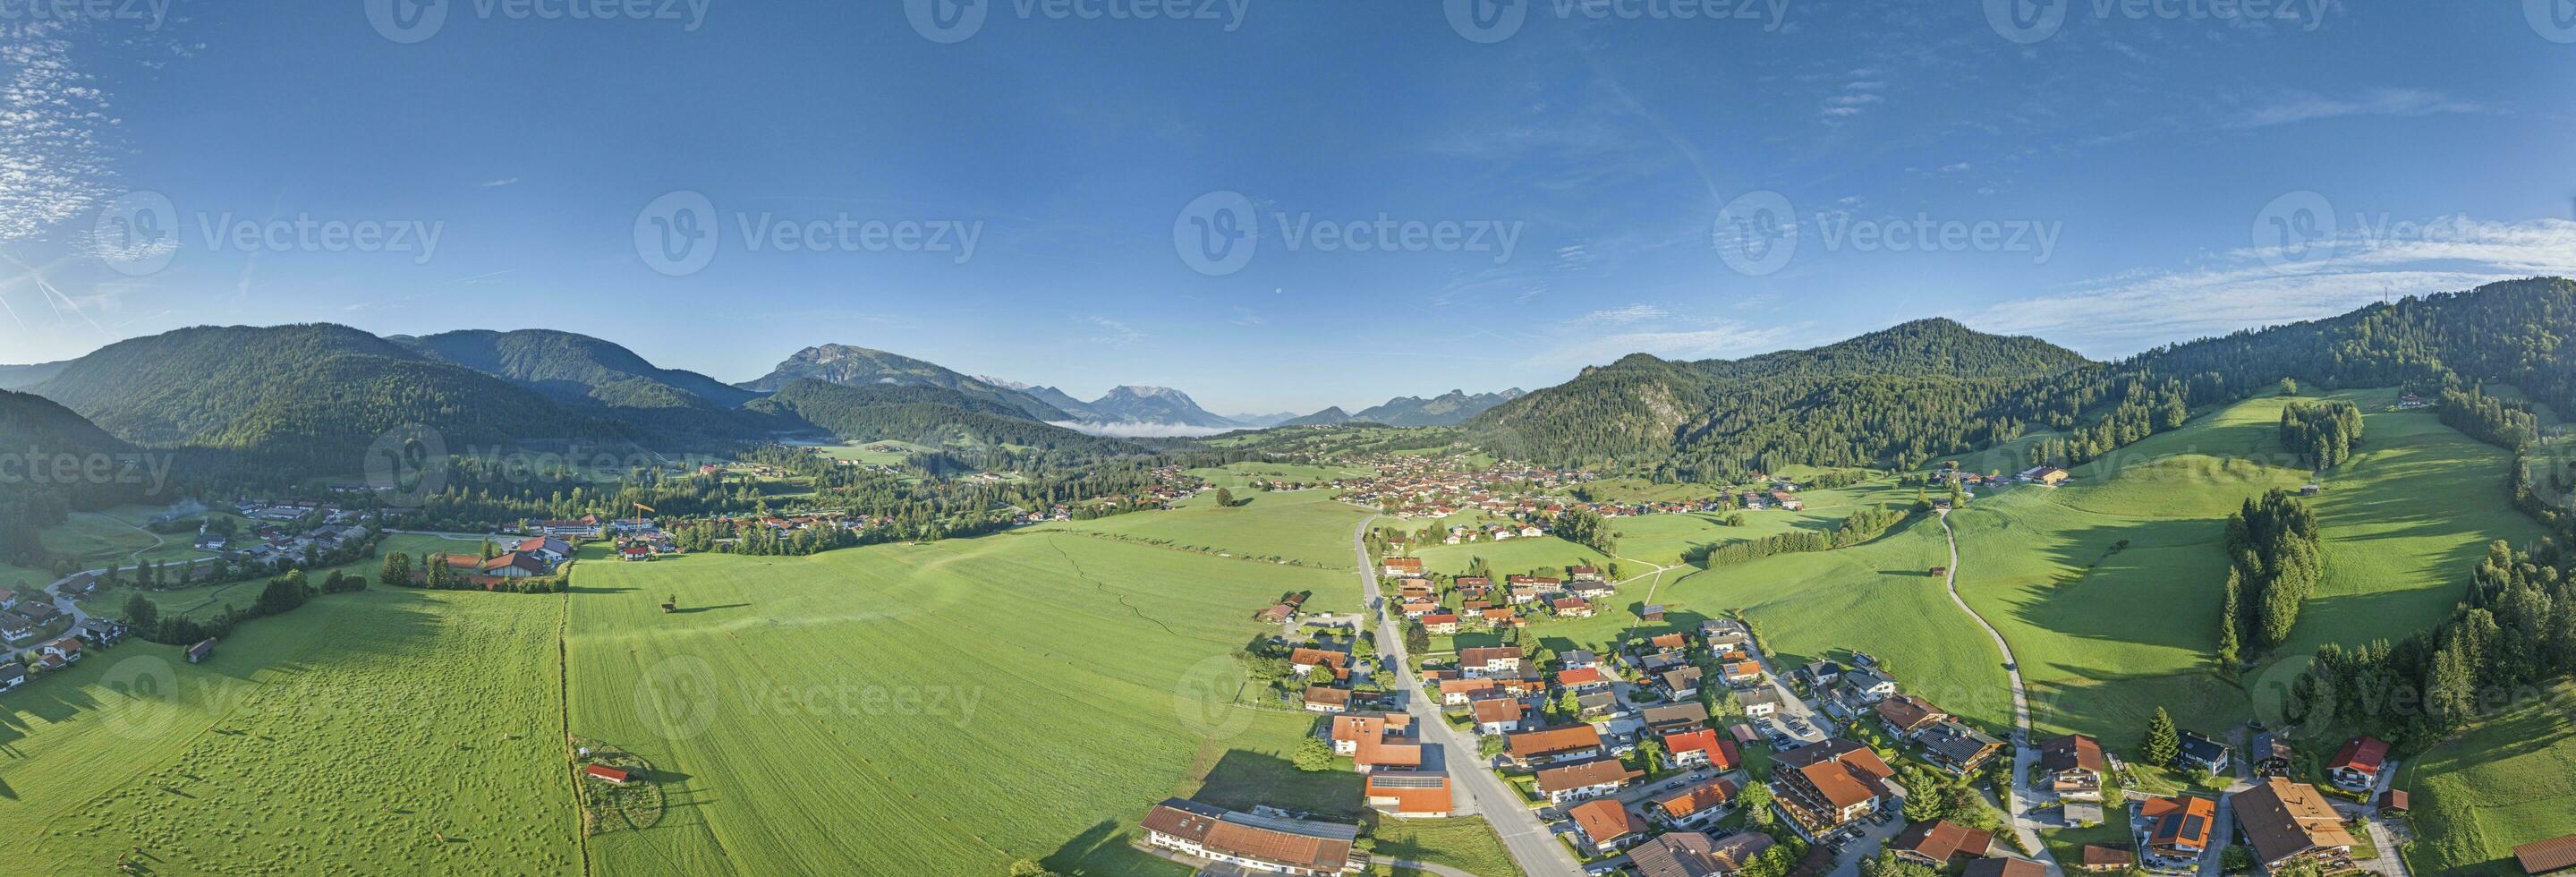 zumbido panorama terminado bávaro turista pueblo reit estoy guiño en verano foto